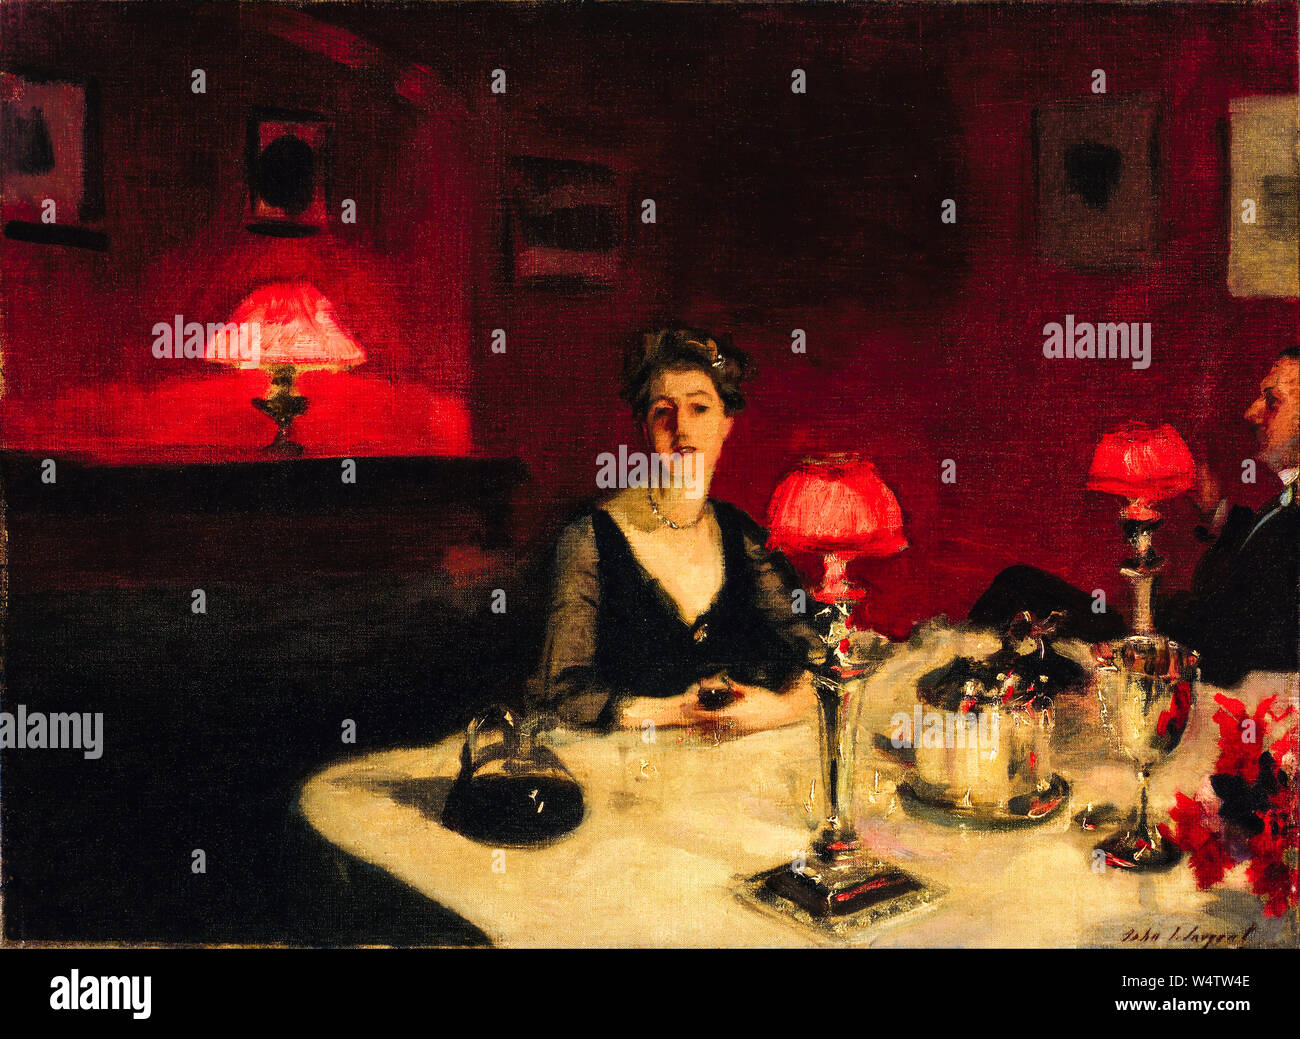 John Singer Sargent, peinture, une table de nuit, 1884 Banque D'Images